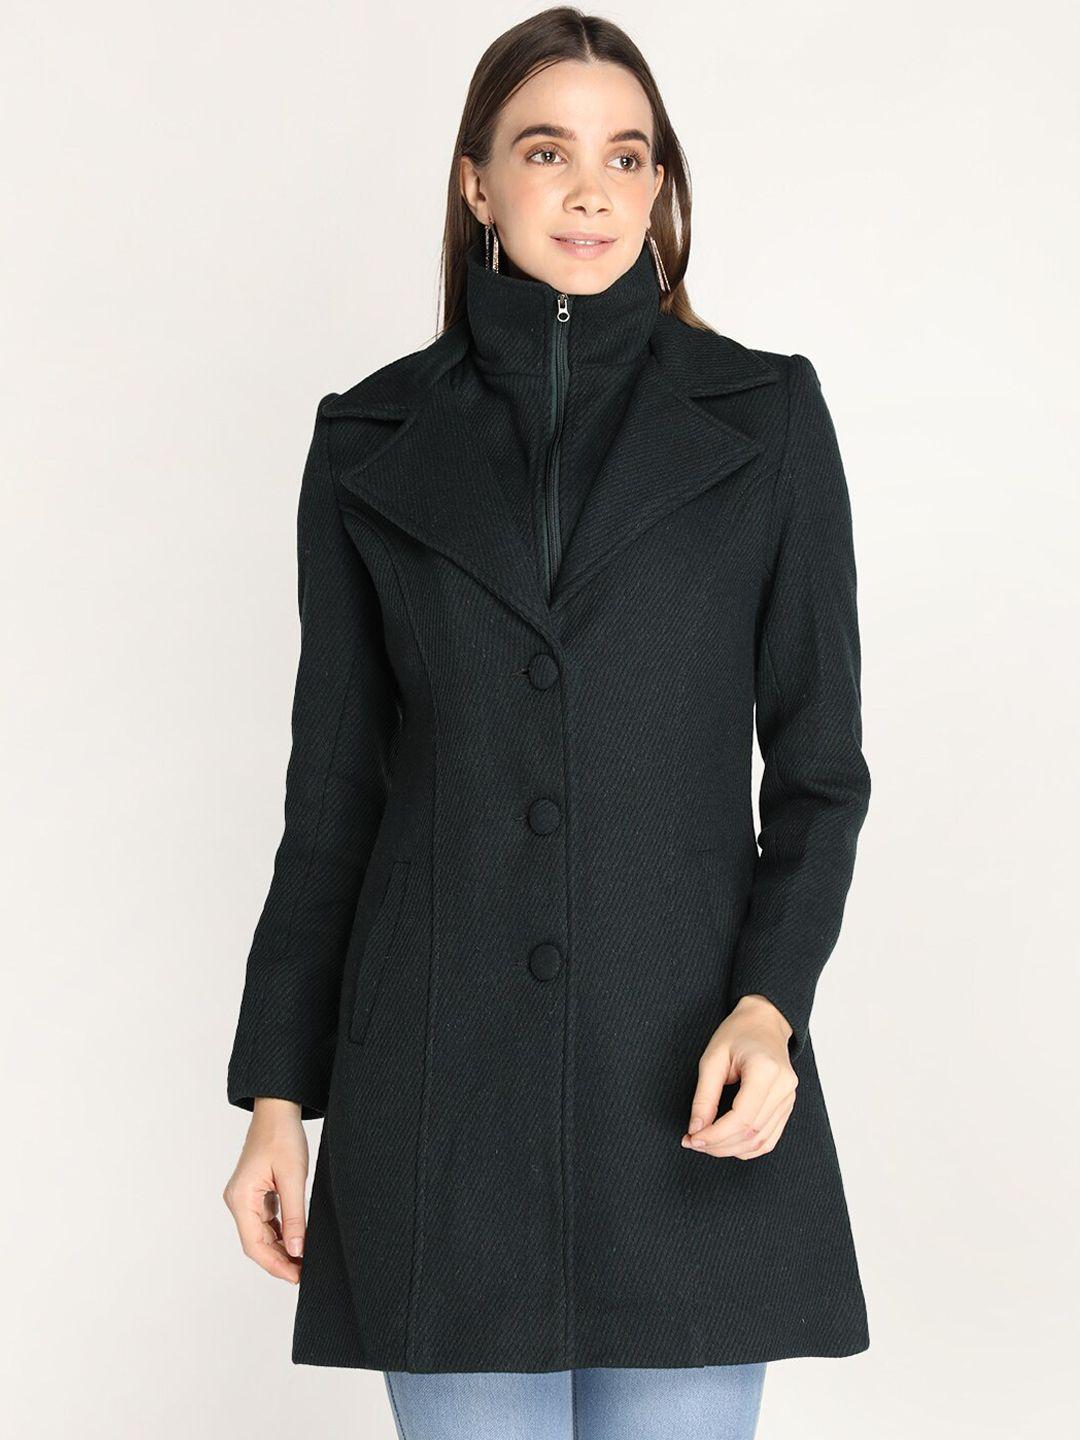 lebork women black solid winter wear coats